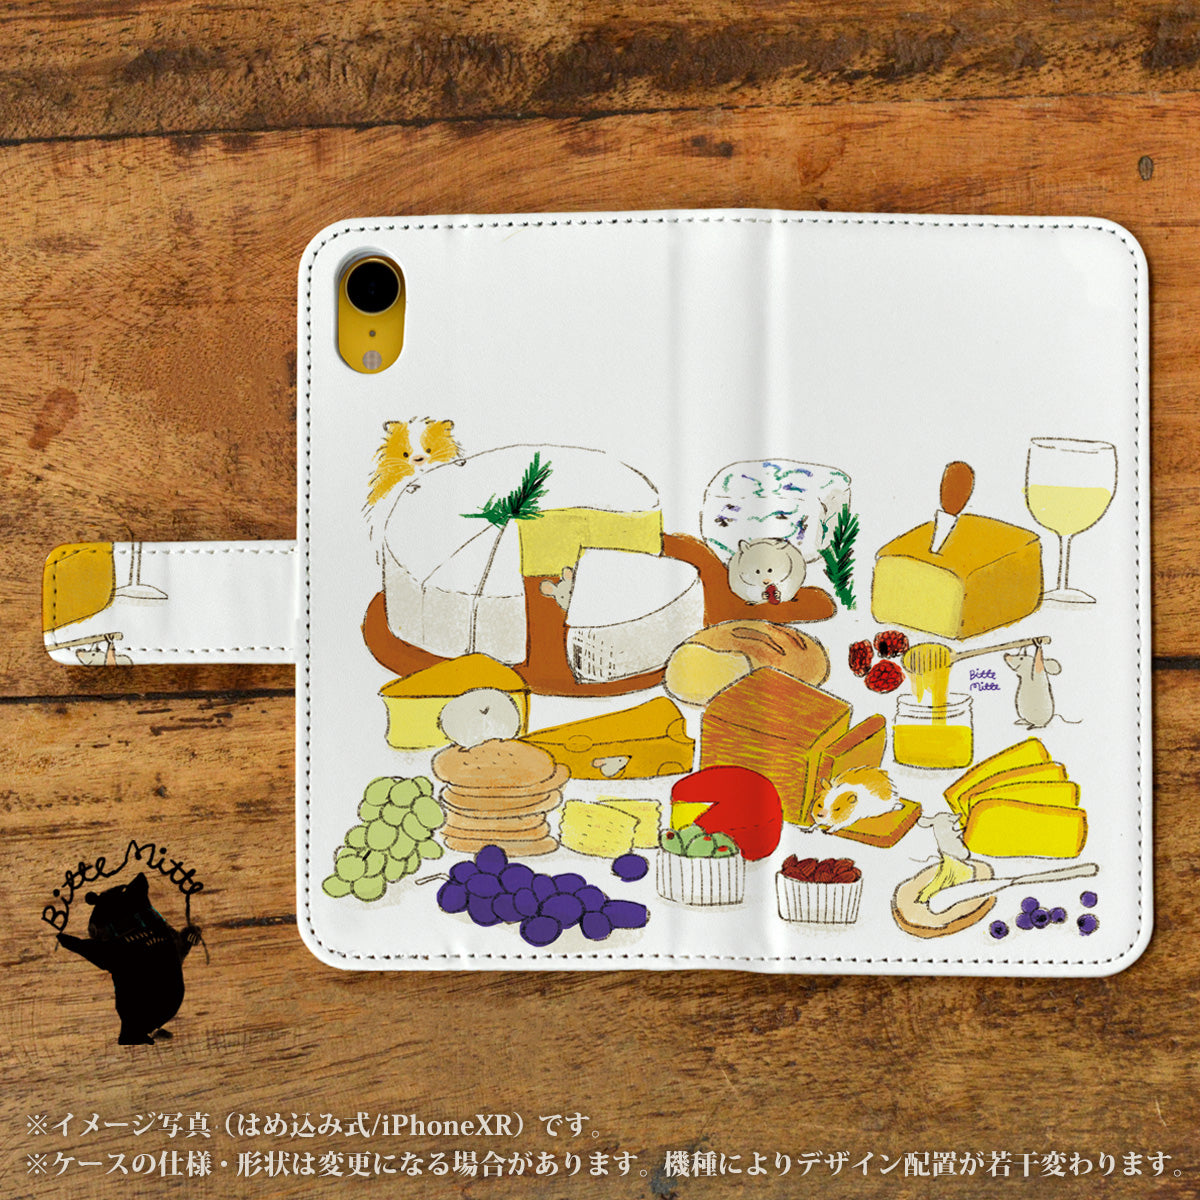 Bitte Mitte!ブランドのデザイン画を印刷したはめ込み式手帳型スマホケース「チーズと果物」のイメージ写真です。機種はiPhoneXRです。